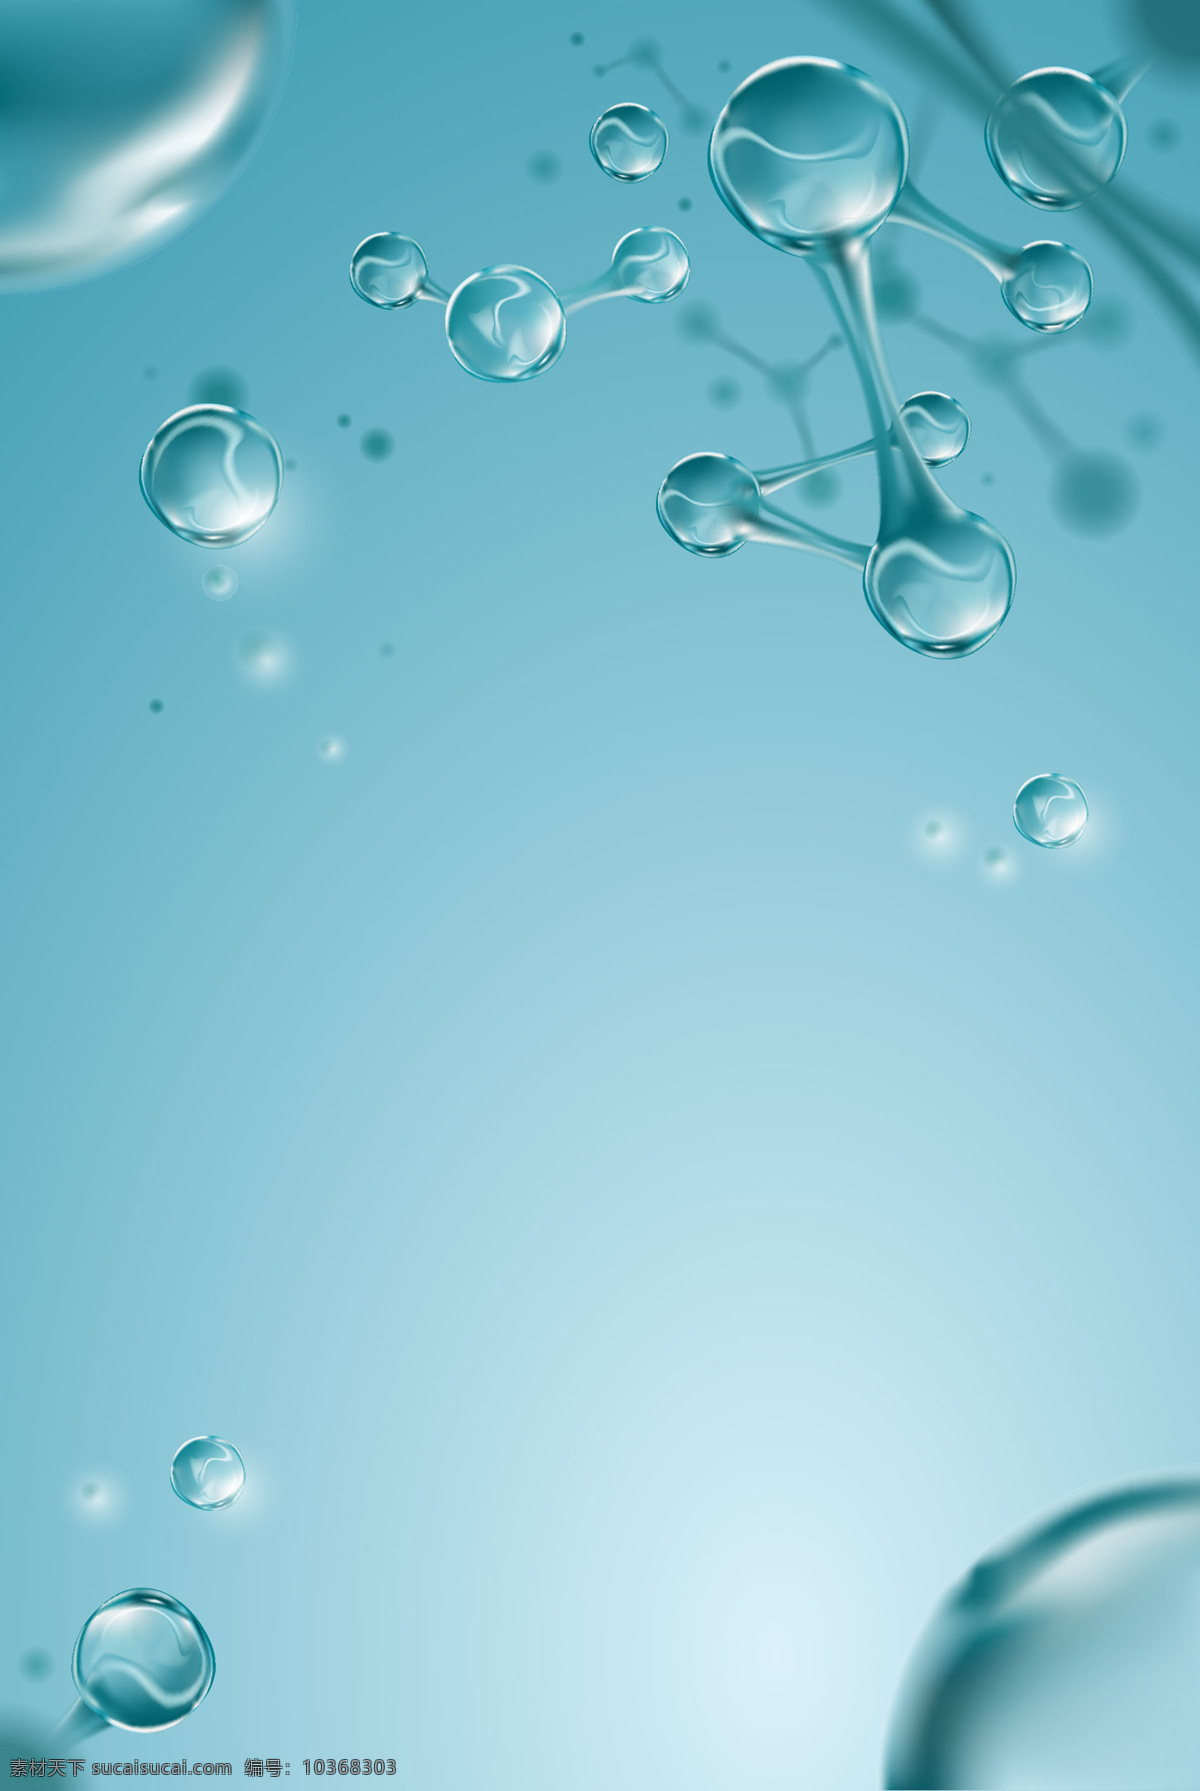 dna 科技 分子 气泡 背景 底纹边框 背景底纹